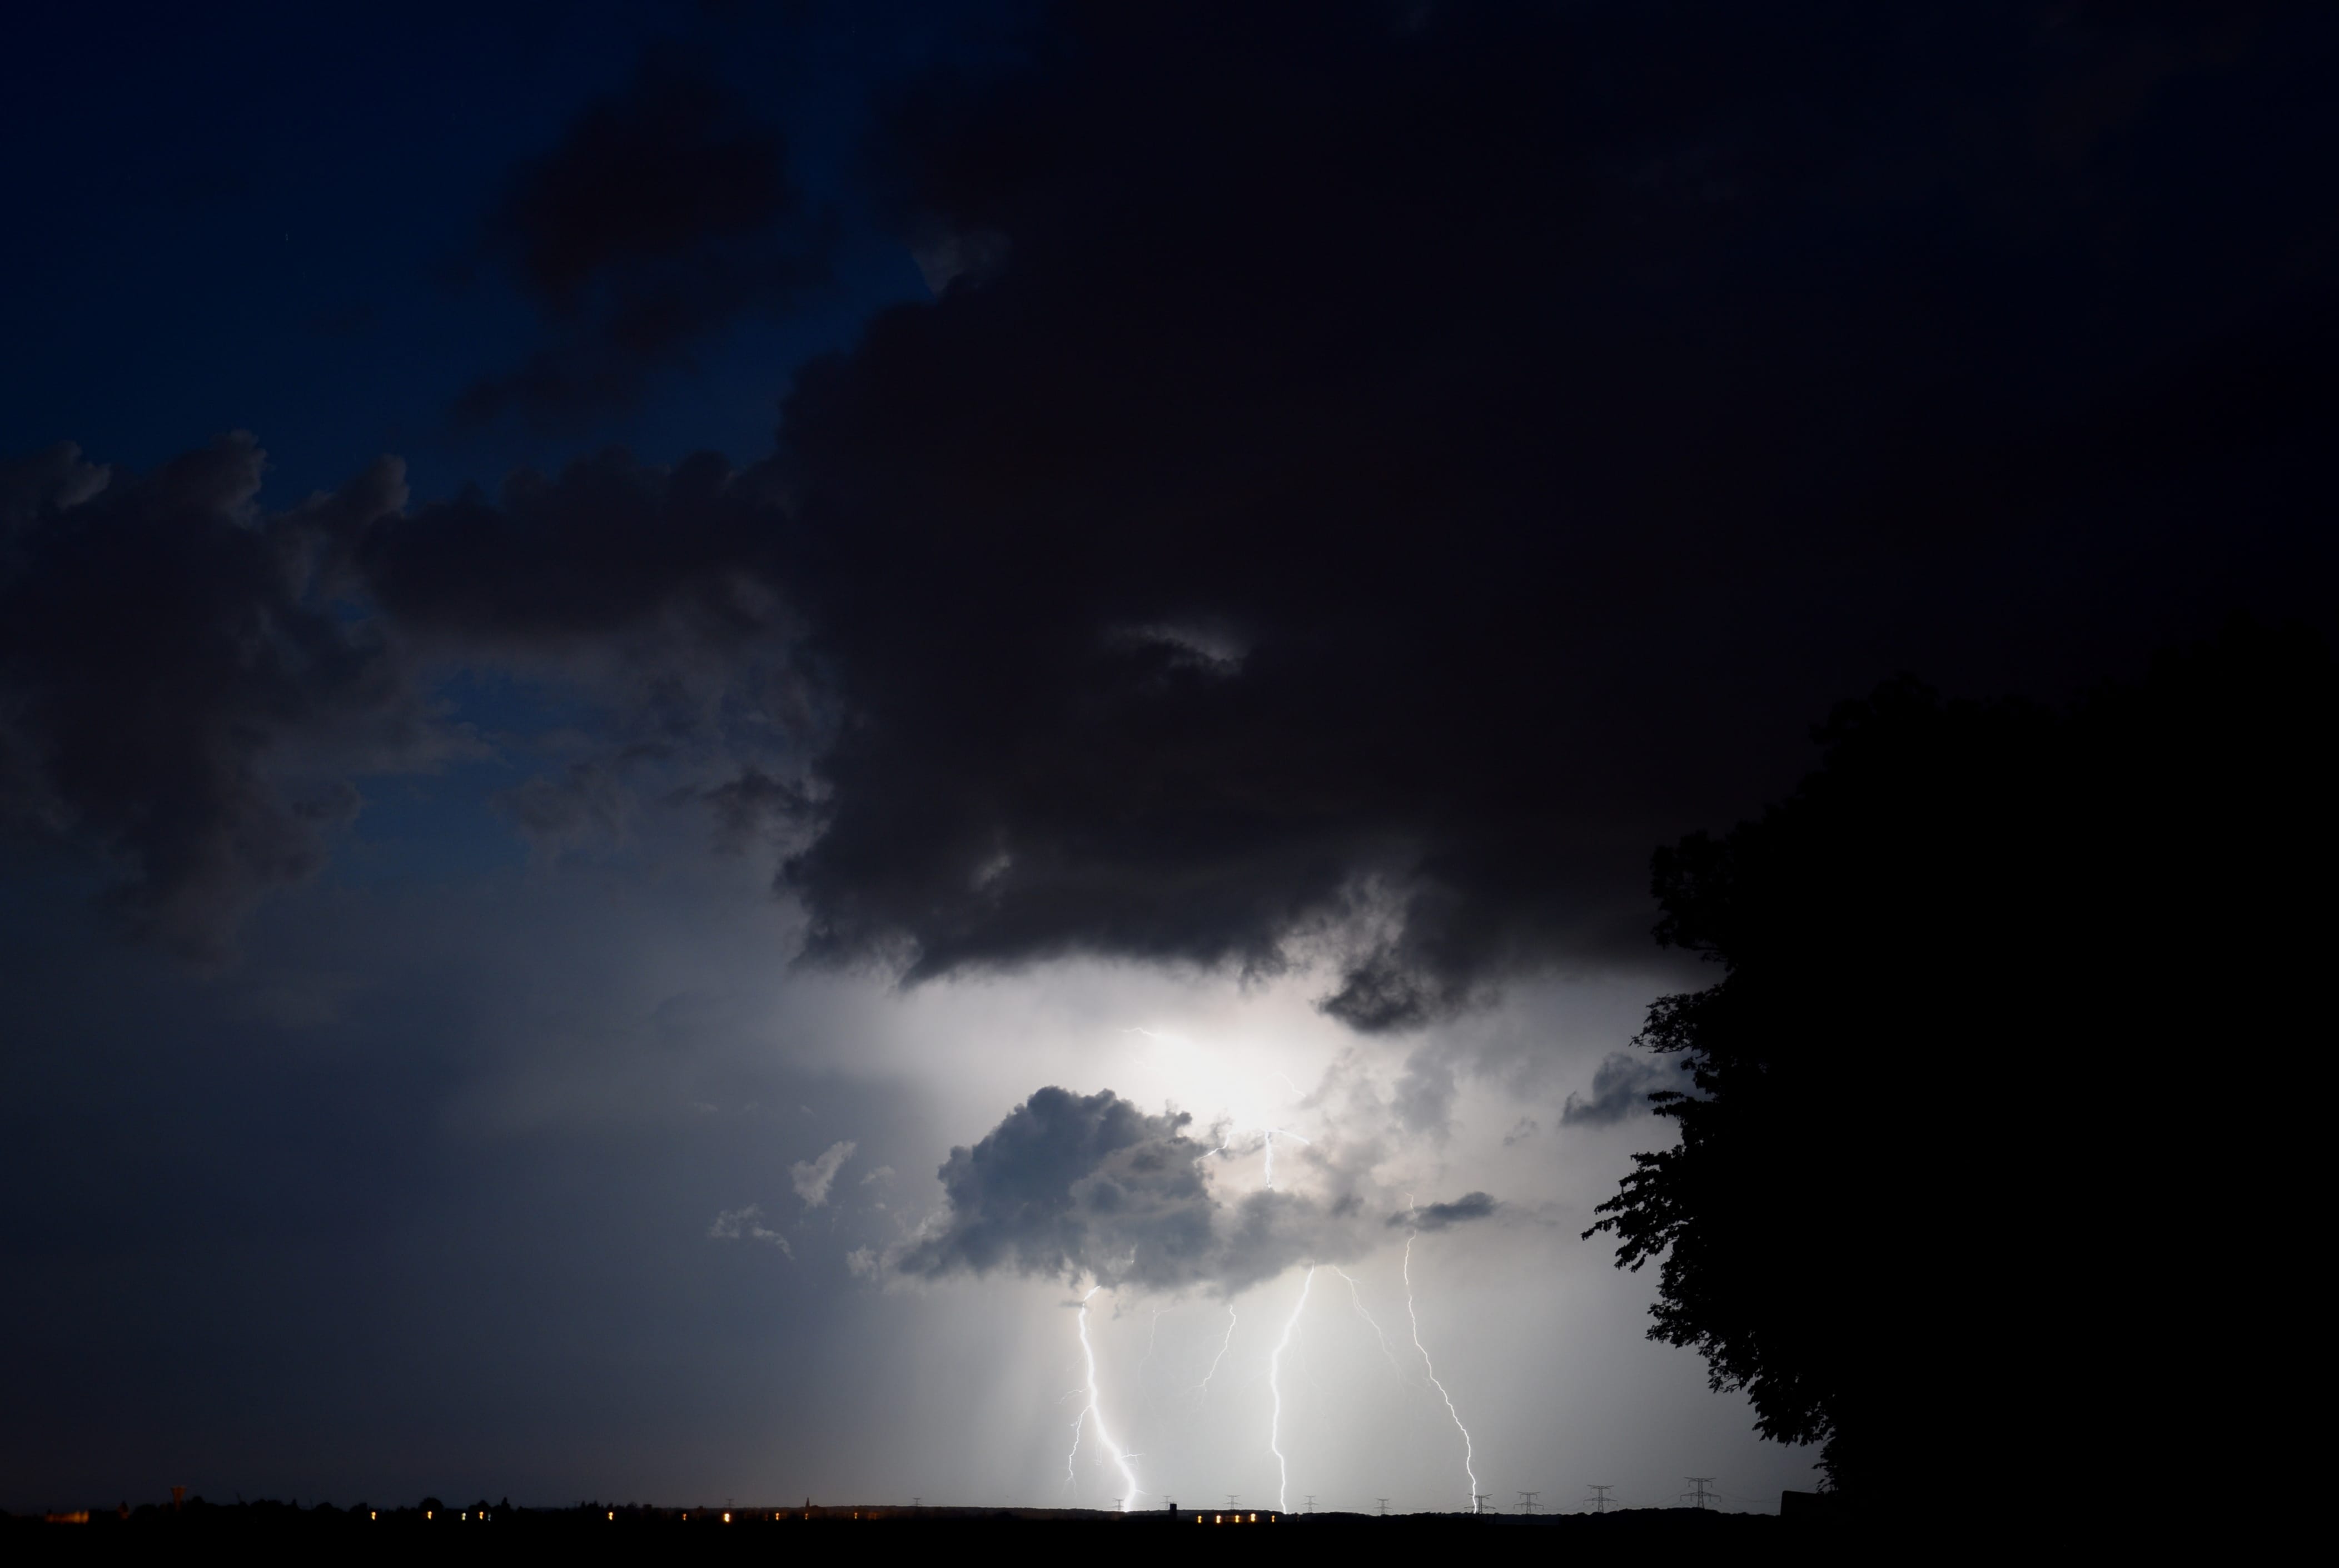 Petit orage sur l'ouest de l'Oise ce soir - 30/05/2018 22:30 - Sébastien GIRARD